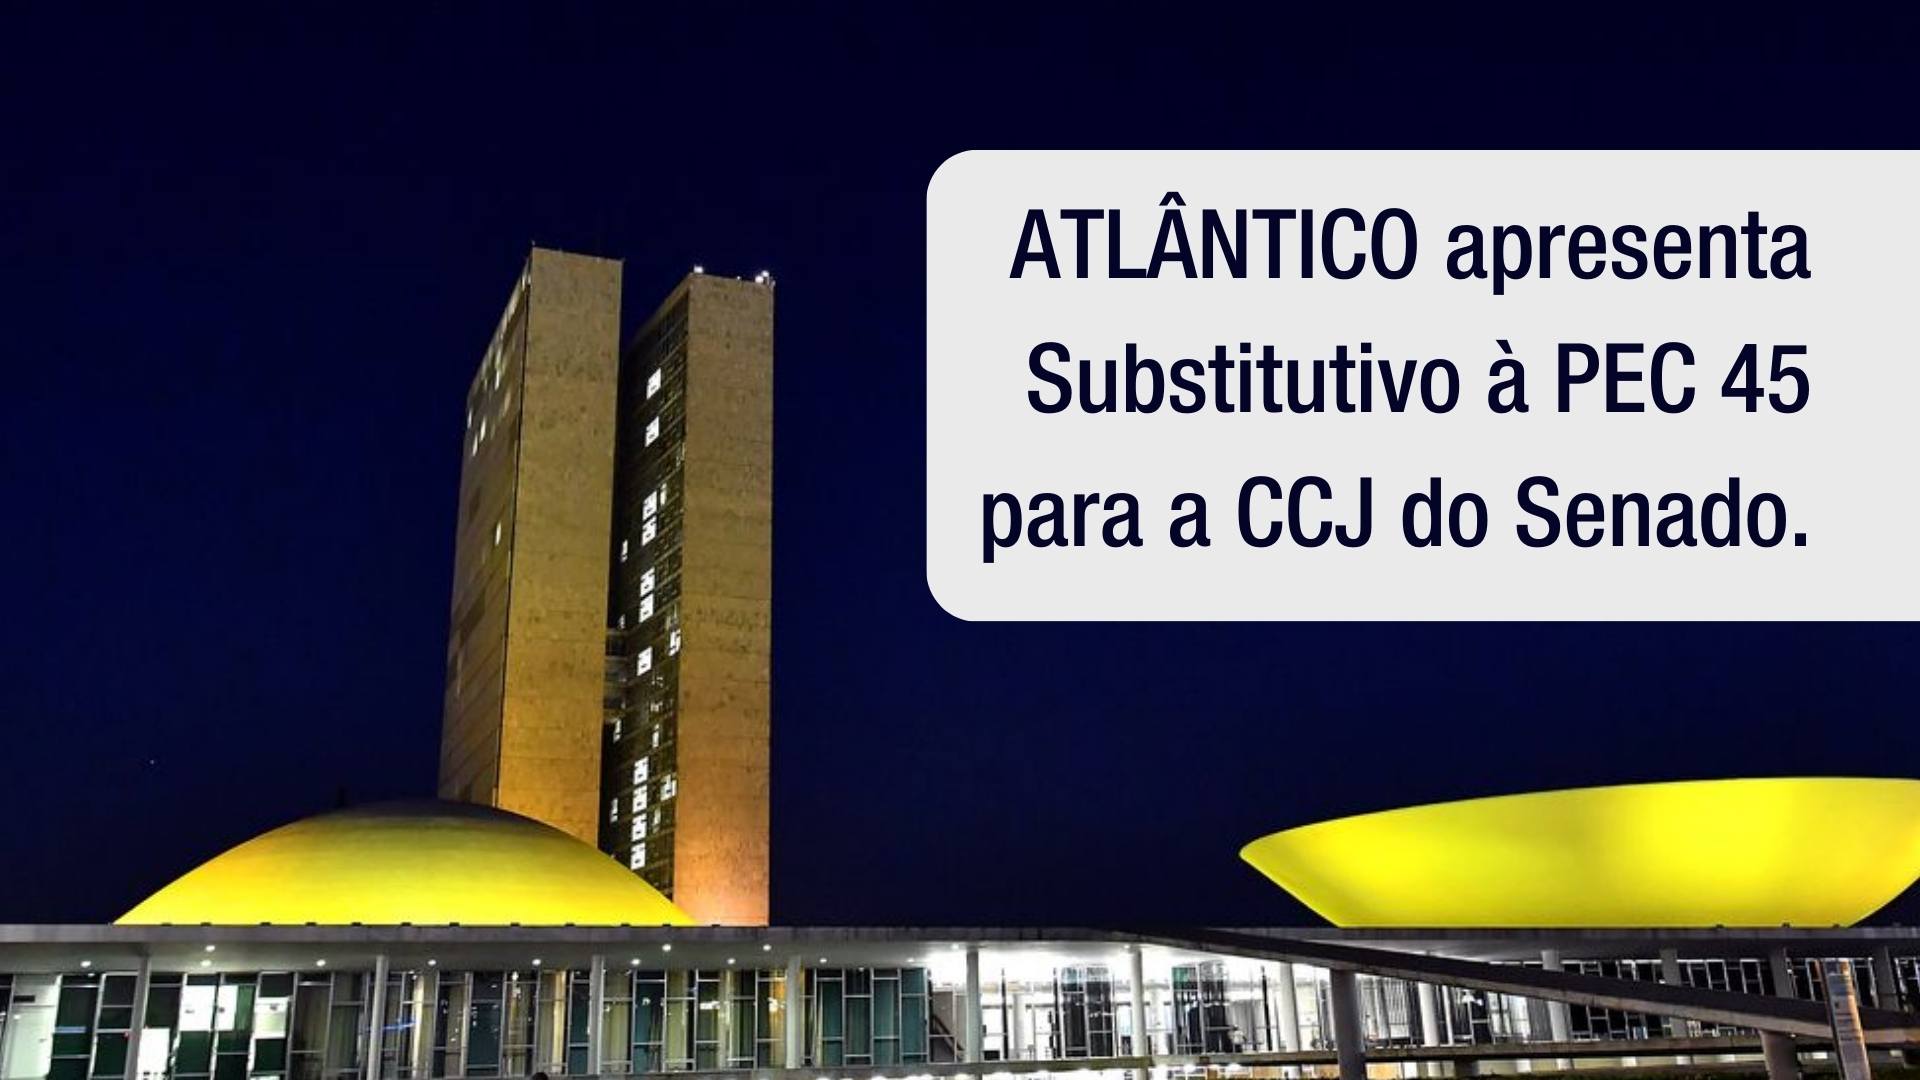 ATLÂNTICO apresenta Substitutivo à PEC 45 para a CCJ do Senado.